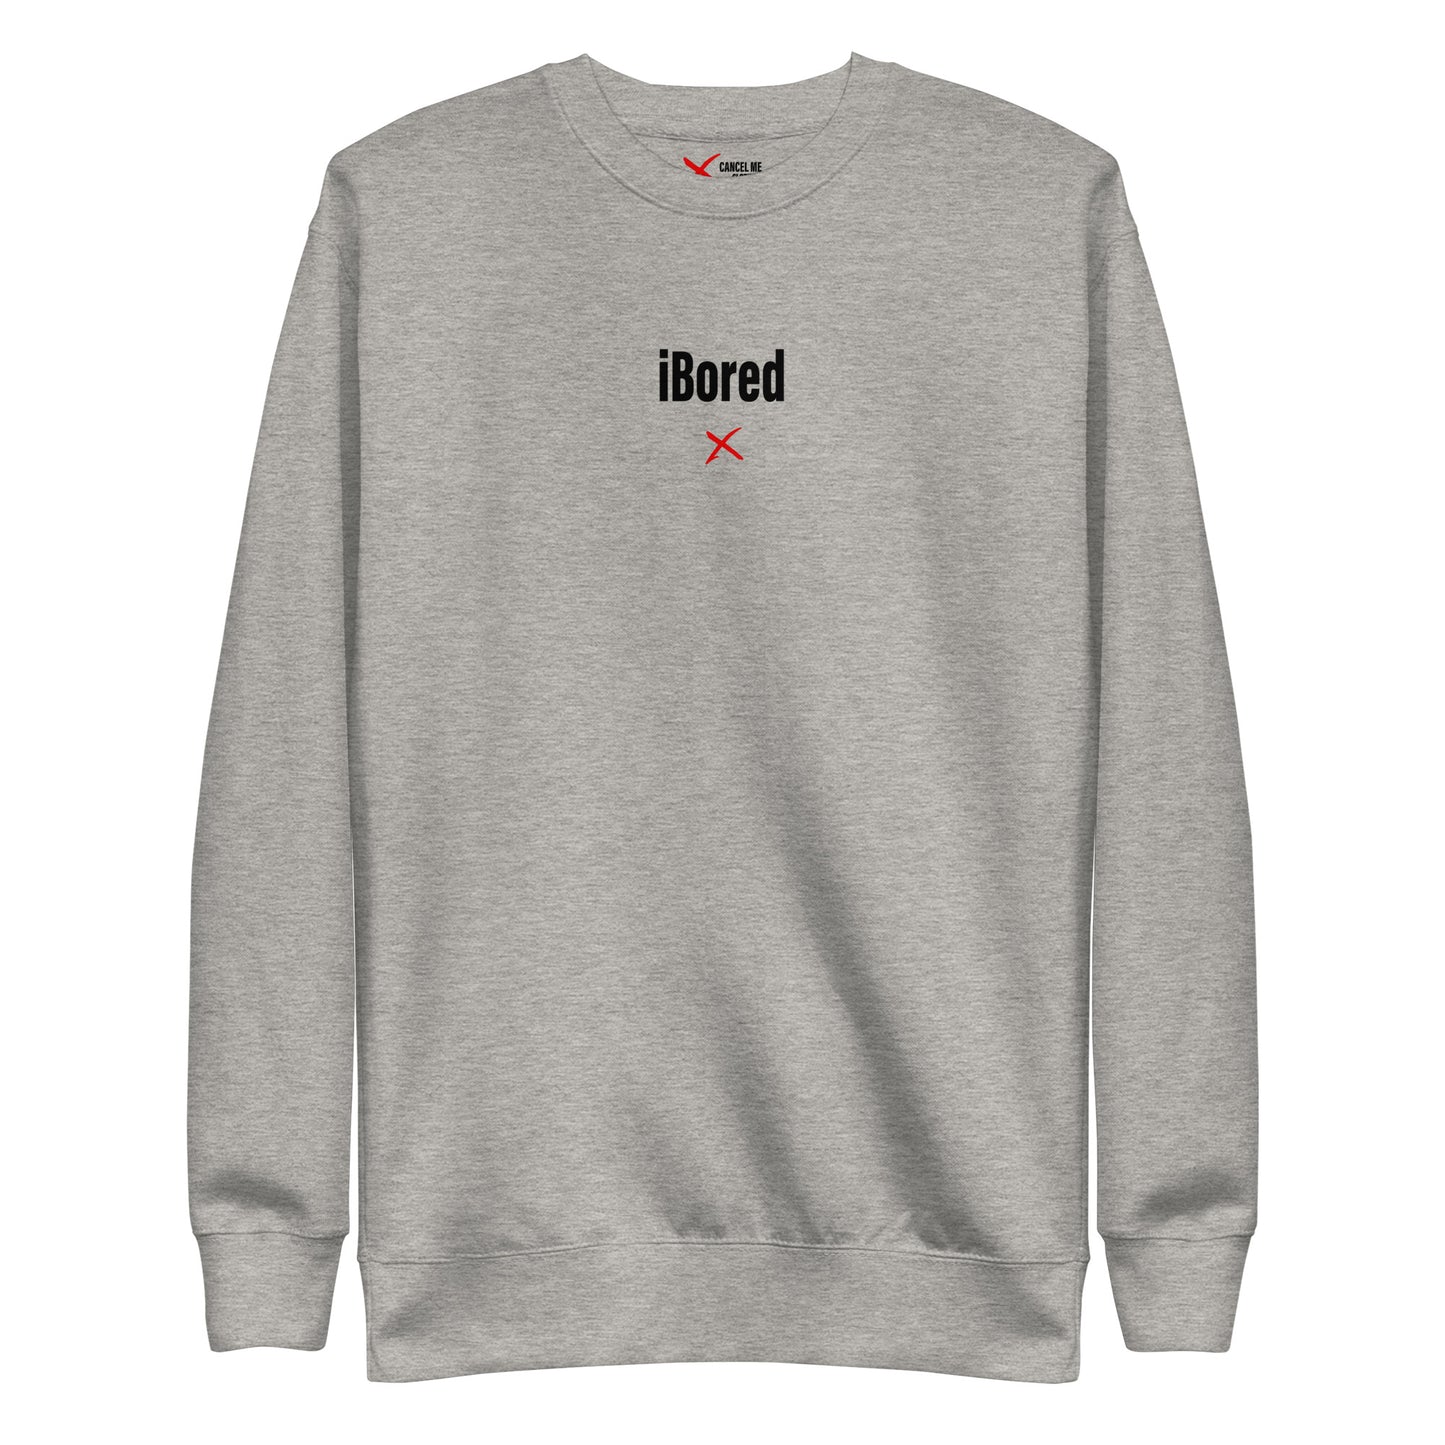 iBored - Sweatshirt